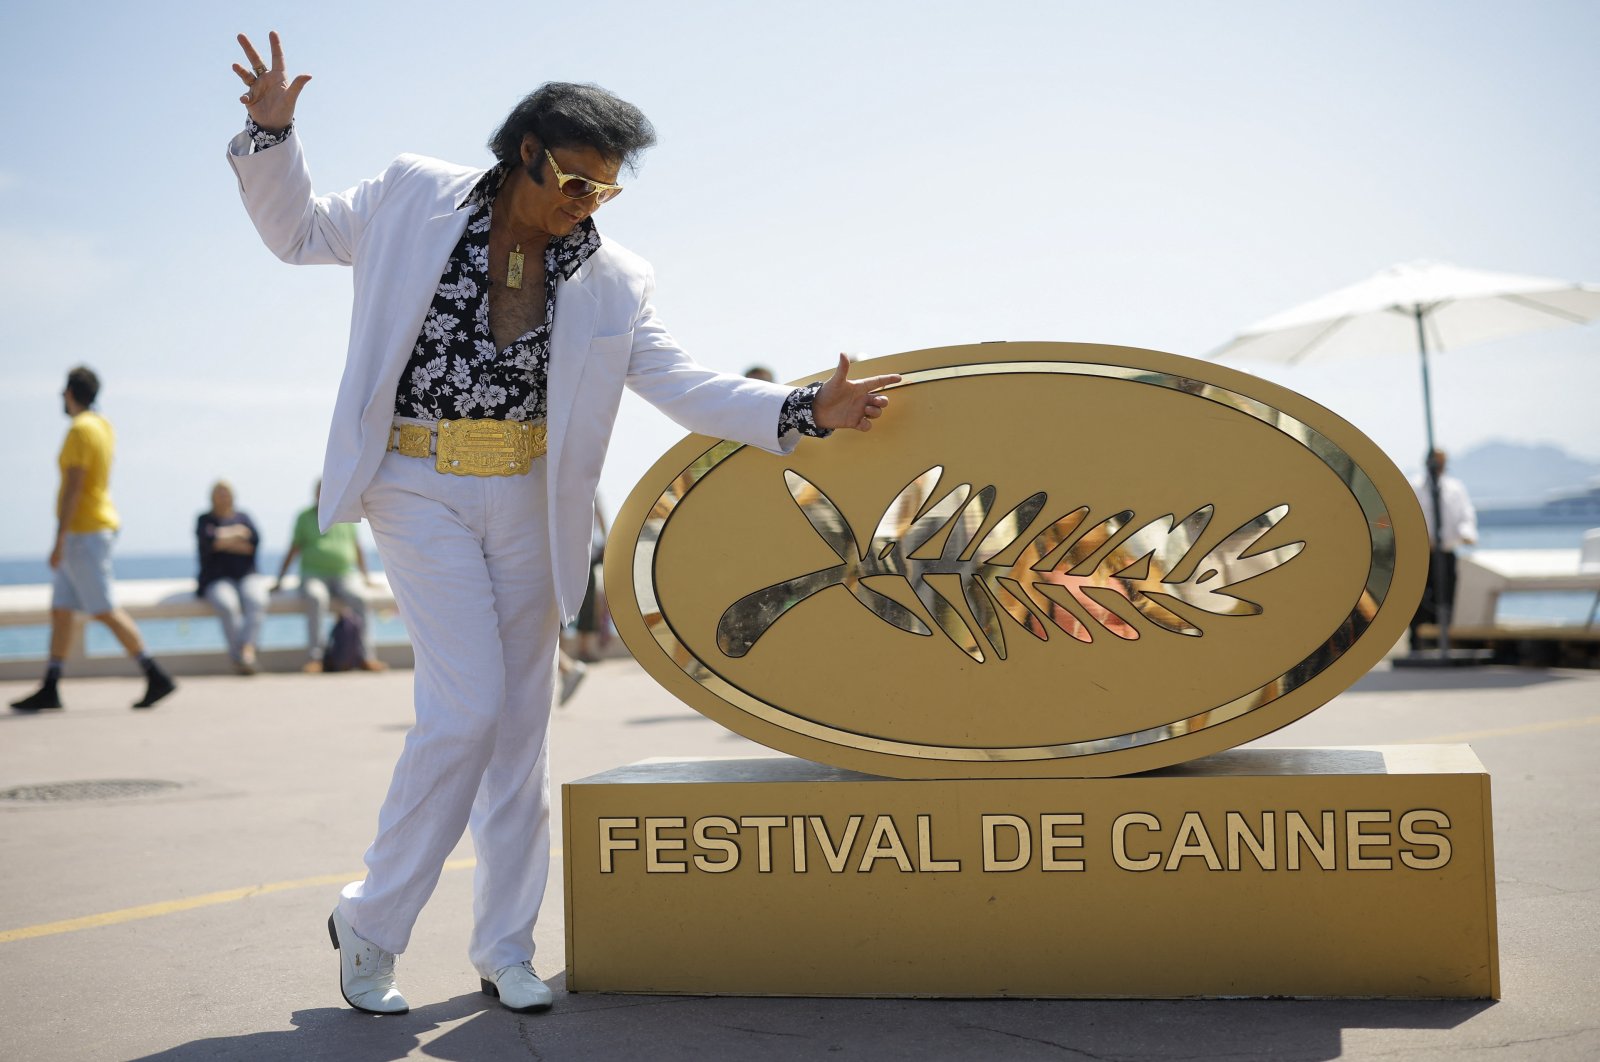 Peniru Elvis Presley membuat semangat rock ‘n’ roll tetap hidup di Cannes